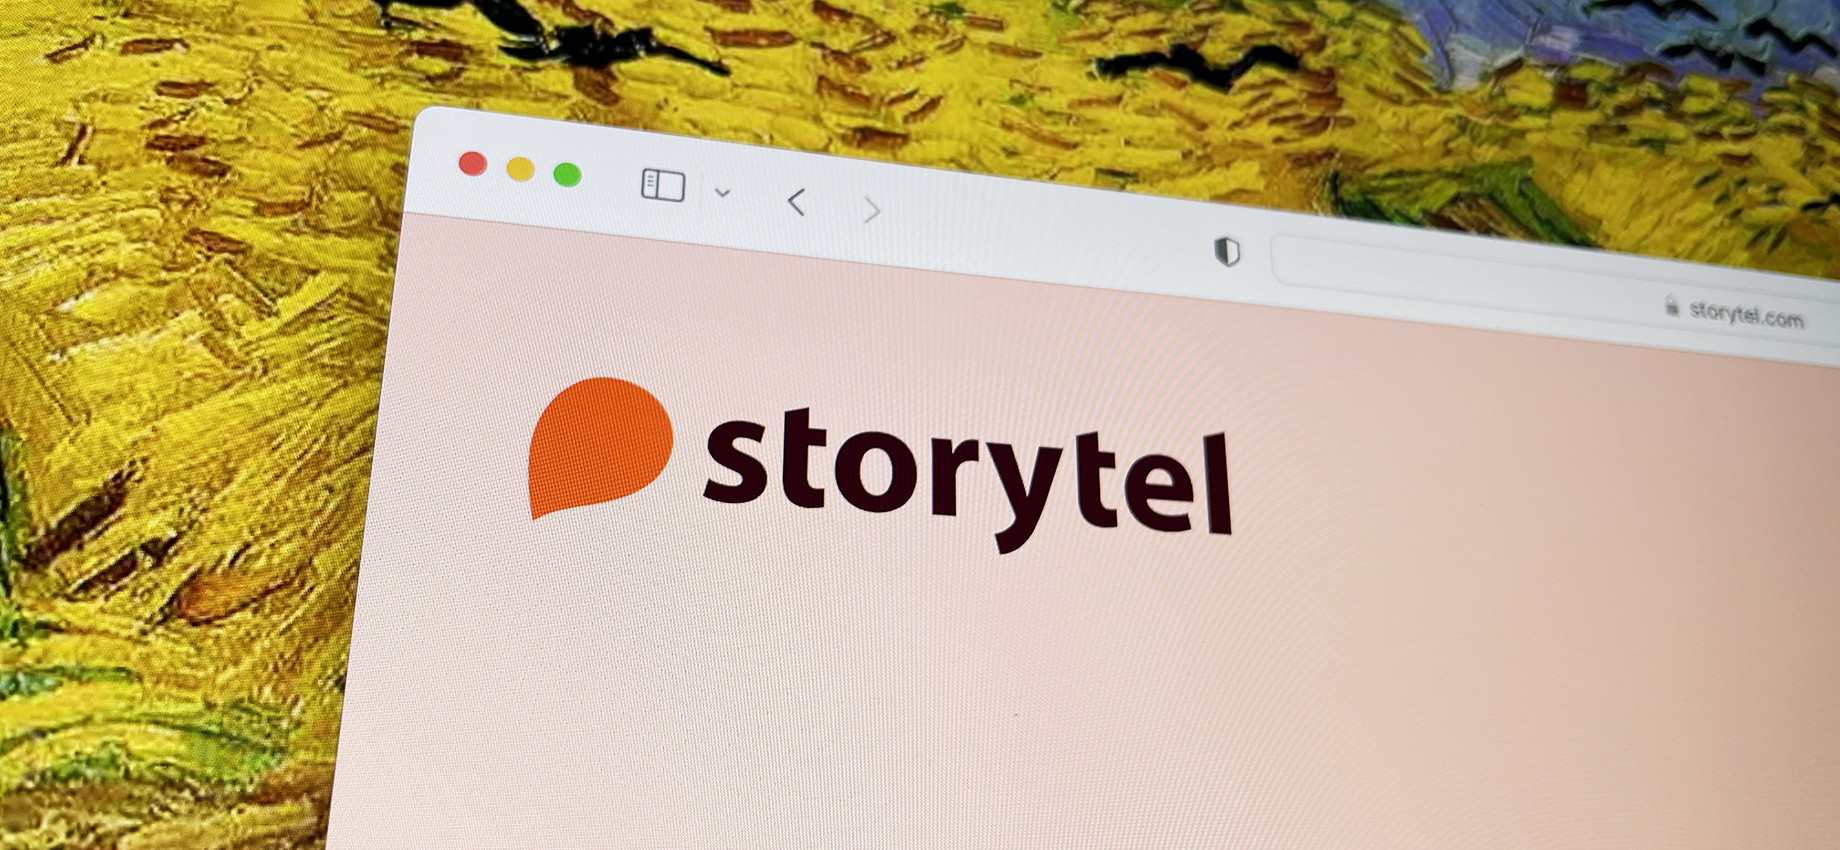 Книжный сервис Storytel перестанет работать в России 1 октября